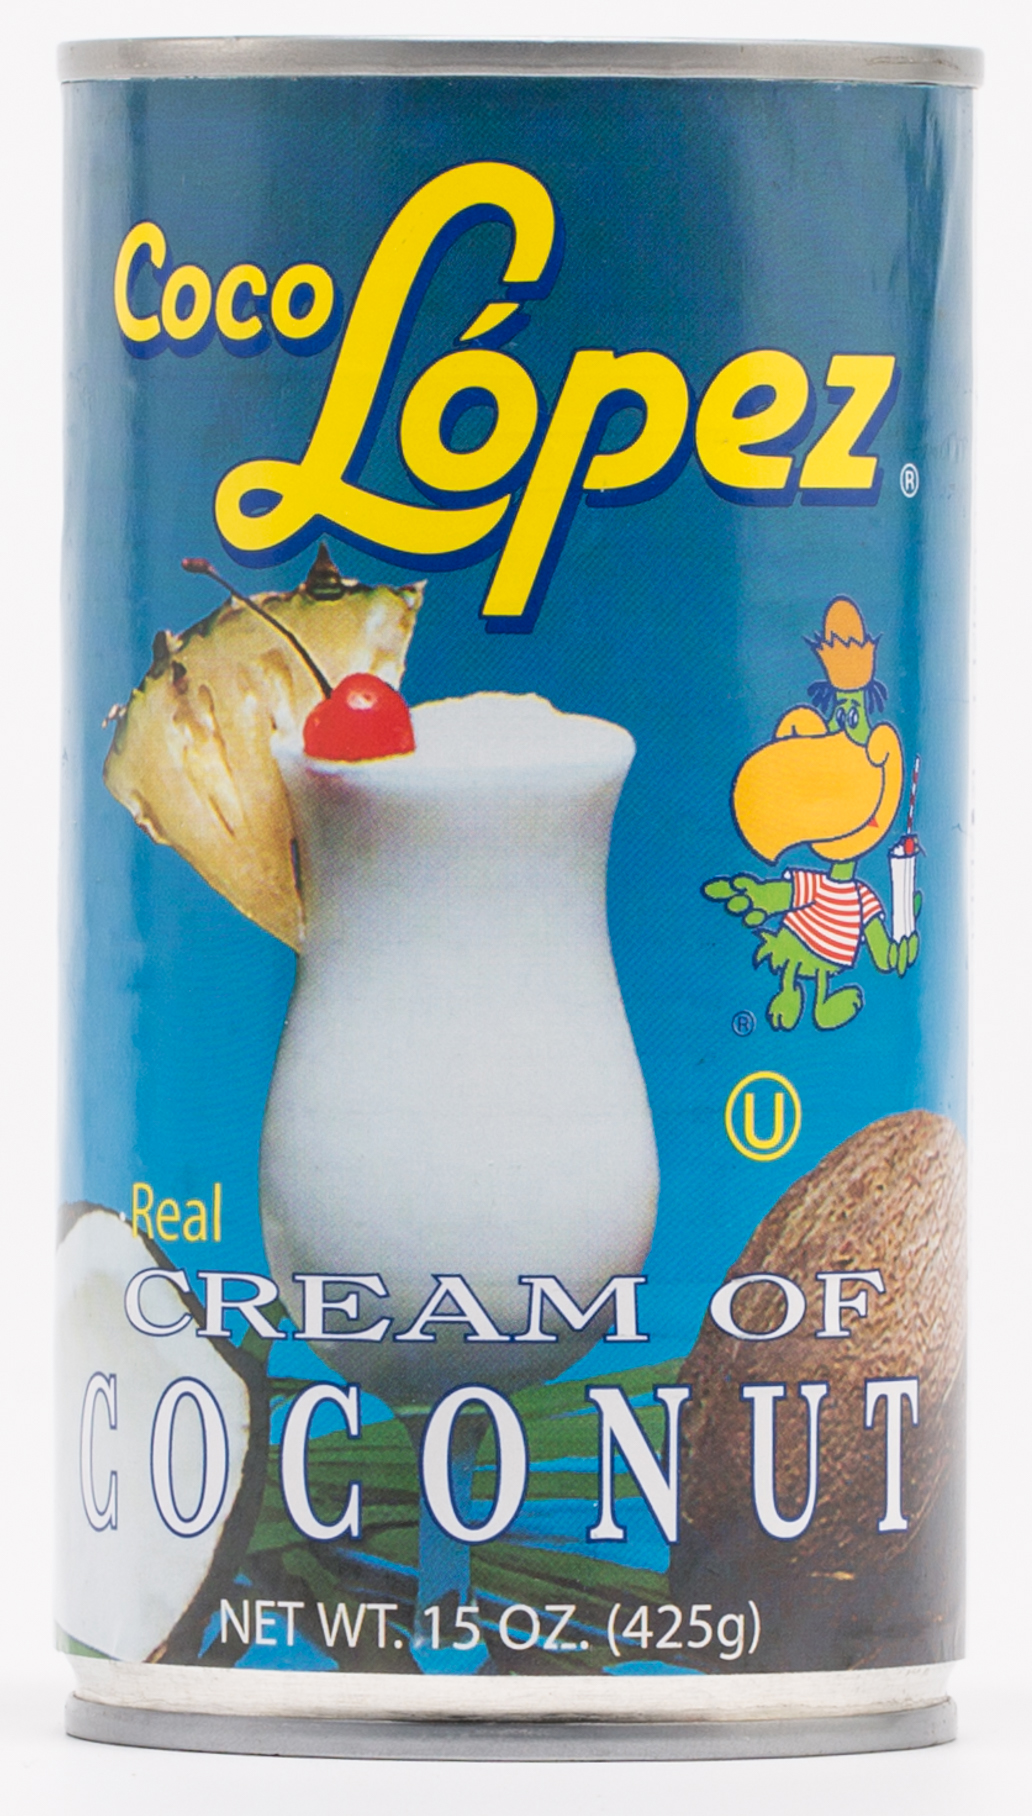 Coco-Lopez-Cream-of-Coconut